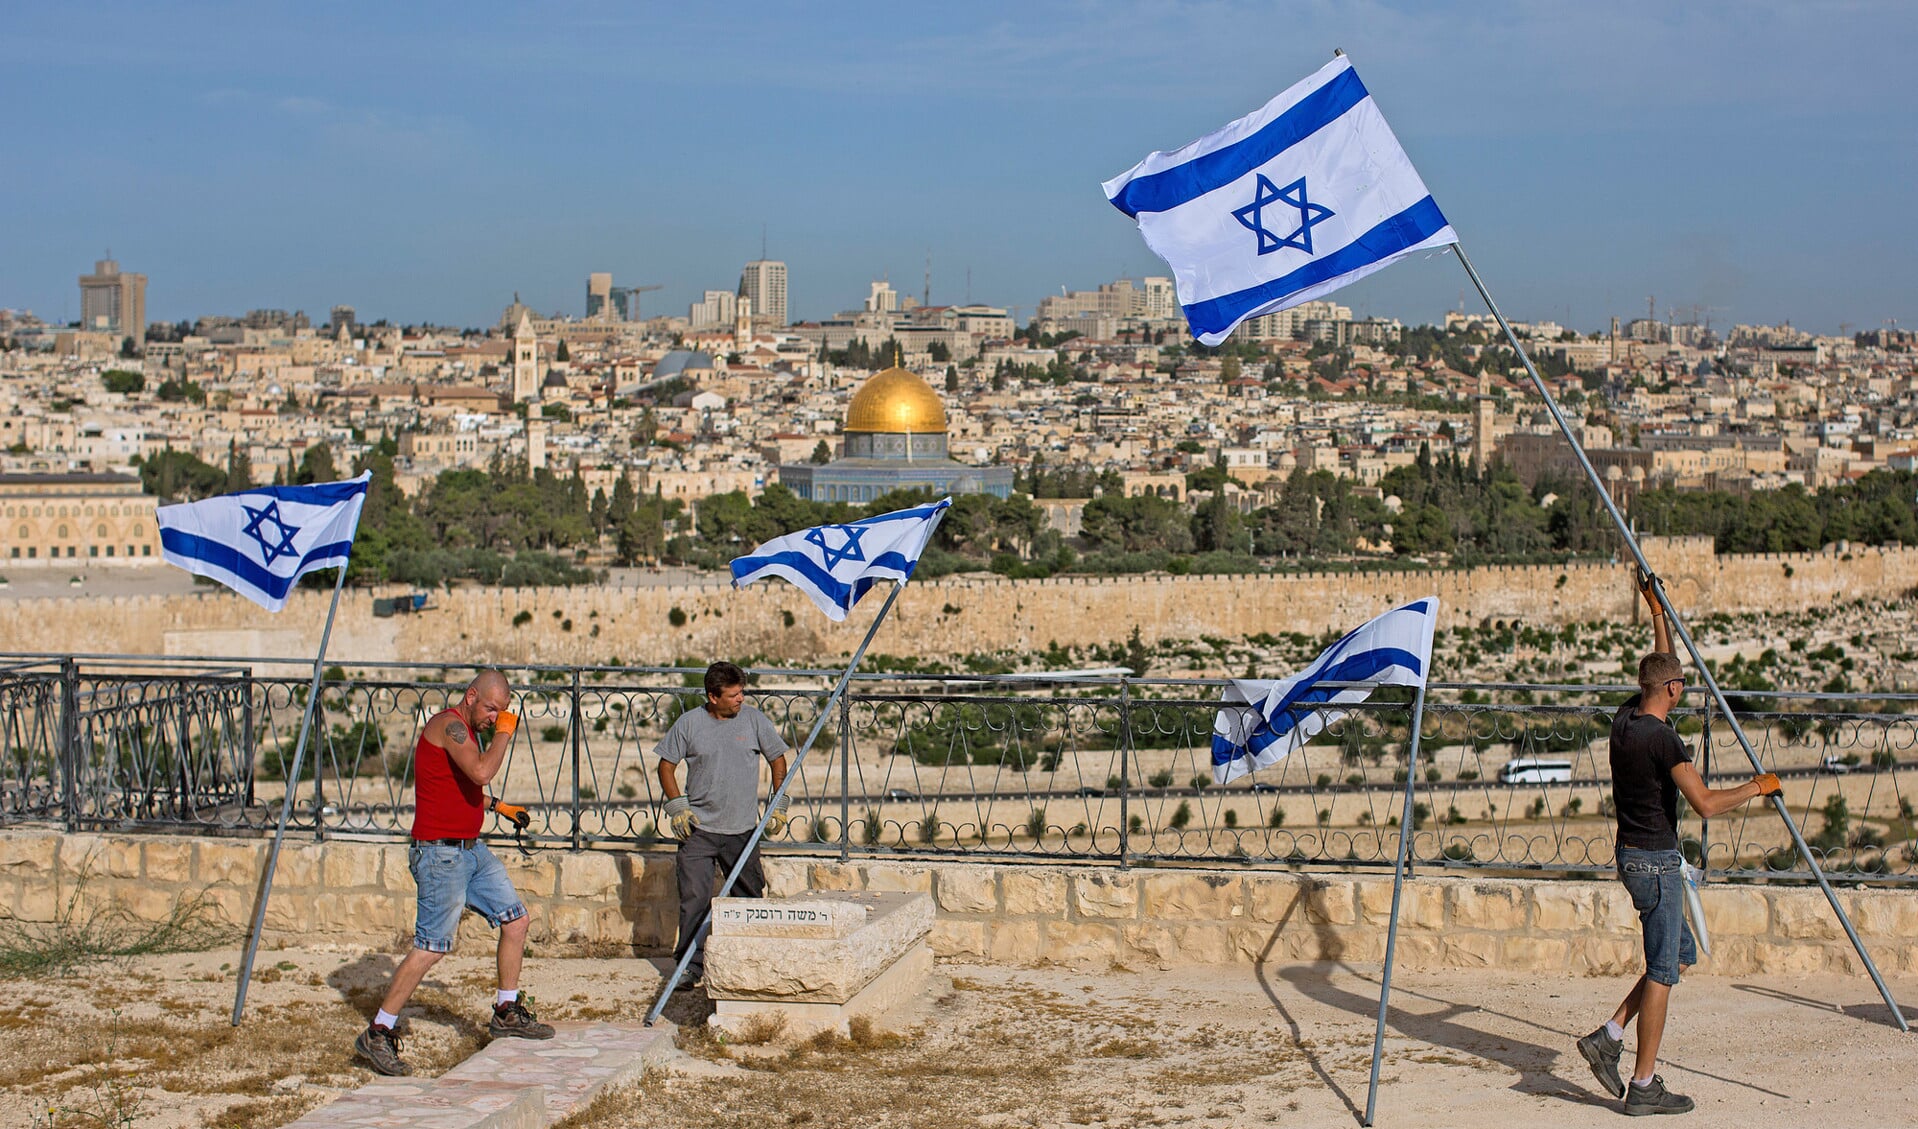 Christenen voor Israël heeft geen verborgen agenda